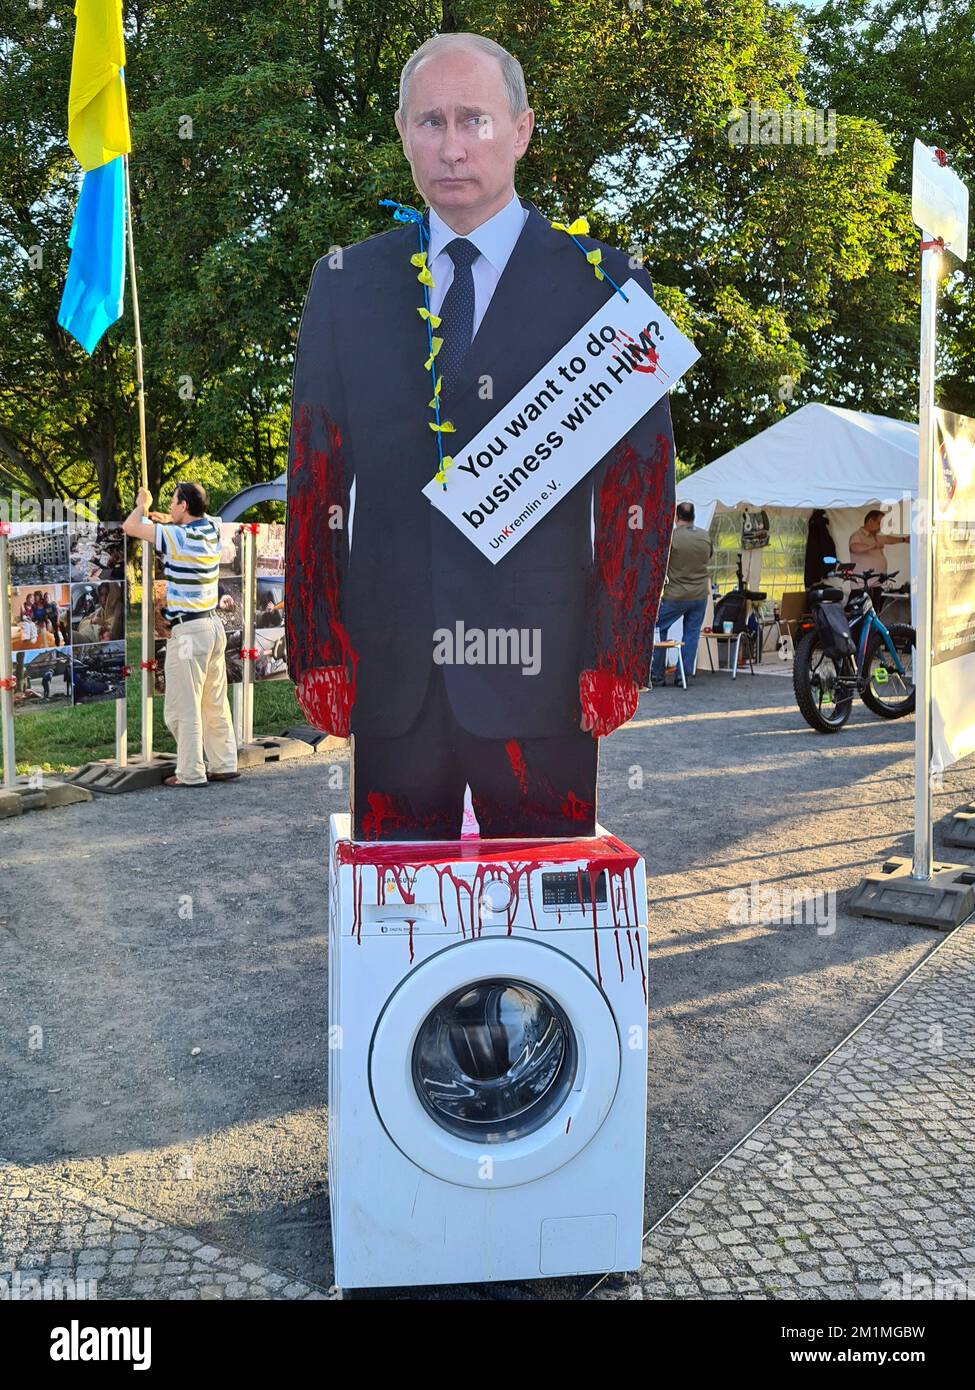 Wladimir Putin als blutruenstiger Diktator - Protest gegen russische Invasion der Ukraine, Berlin  (nur fuer redaktionelle Verwendung. Keine Werbung. Stock Photo